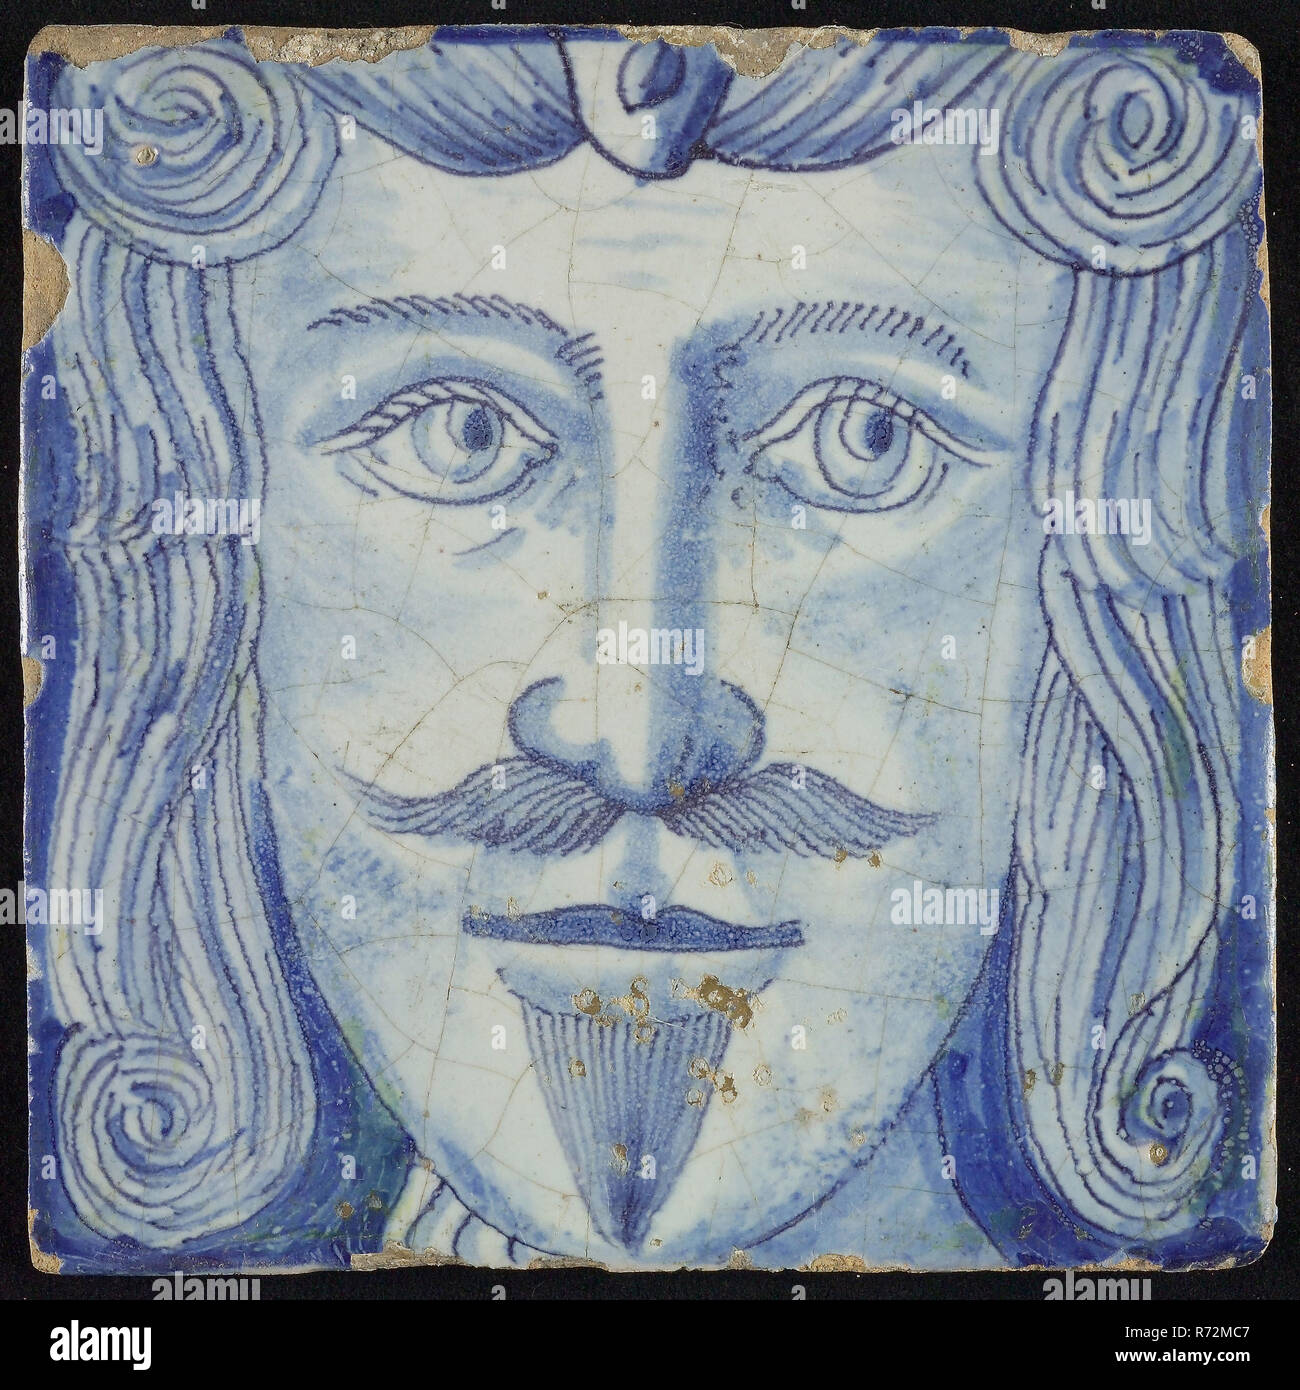 Azulejos de chimenea de la pilastra, azul sobre blanco, parte de pilar con  cabeza de hombre con bigote y barba, la pilastra de la chimenea de la  pilastra de mosaico cerámico fragmento